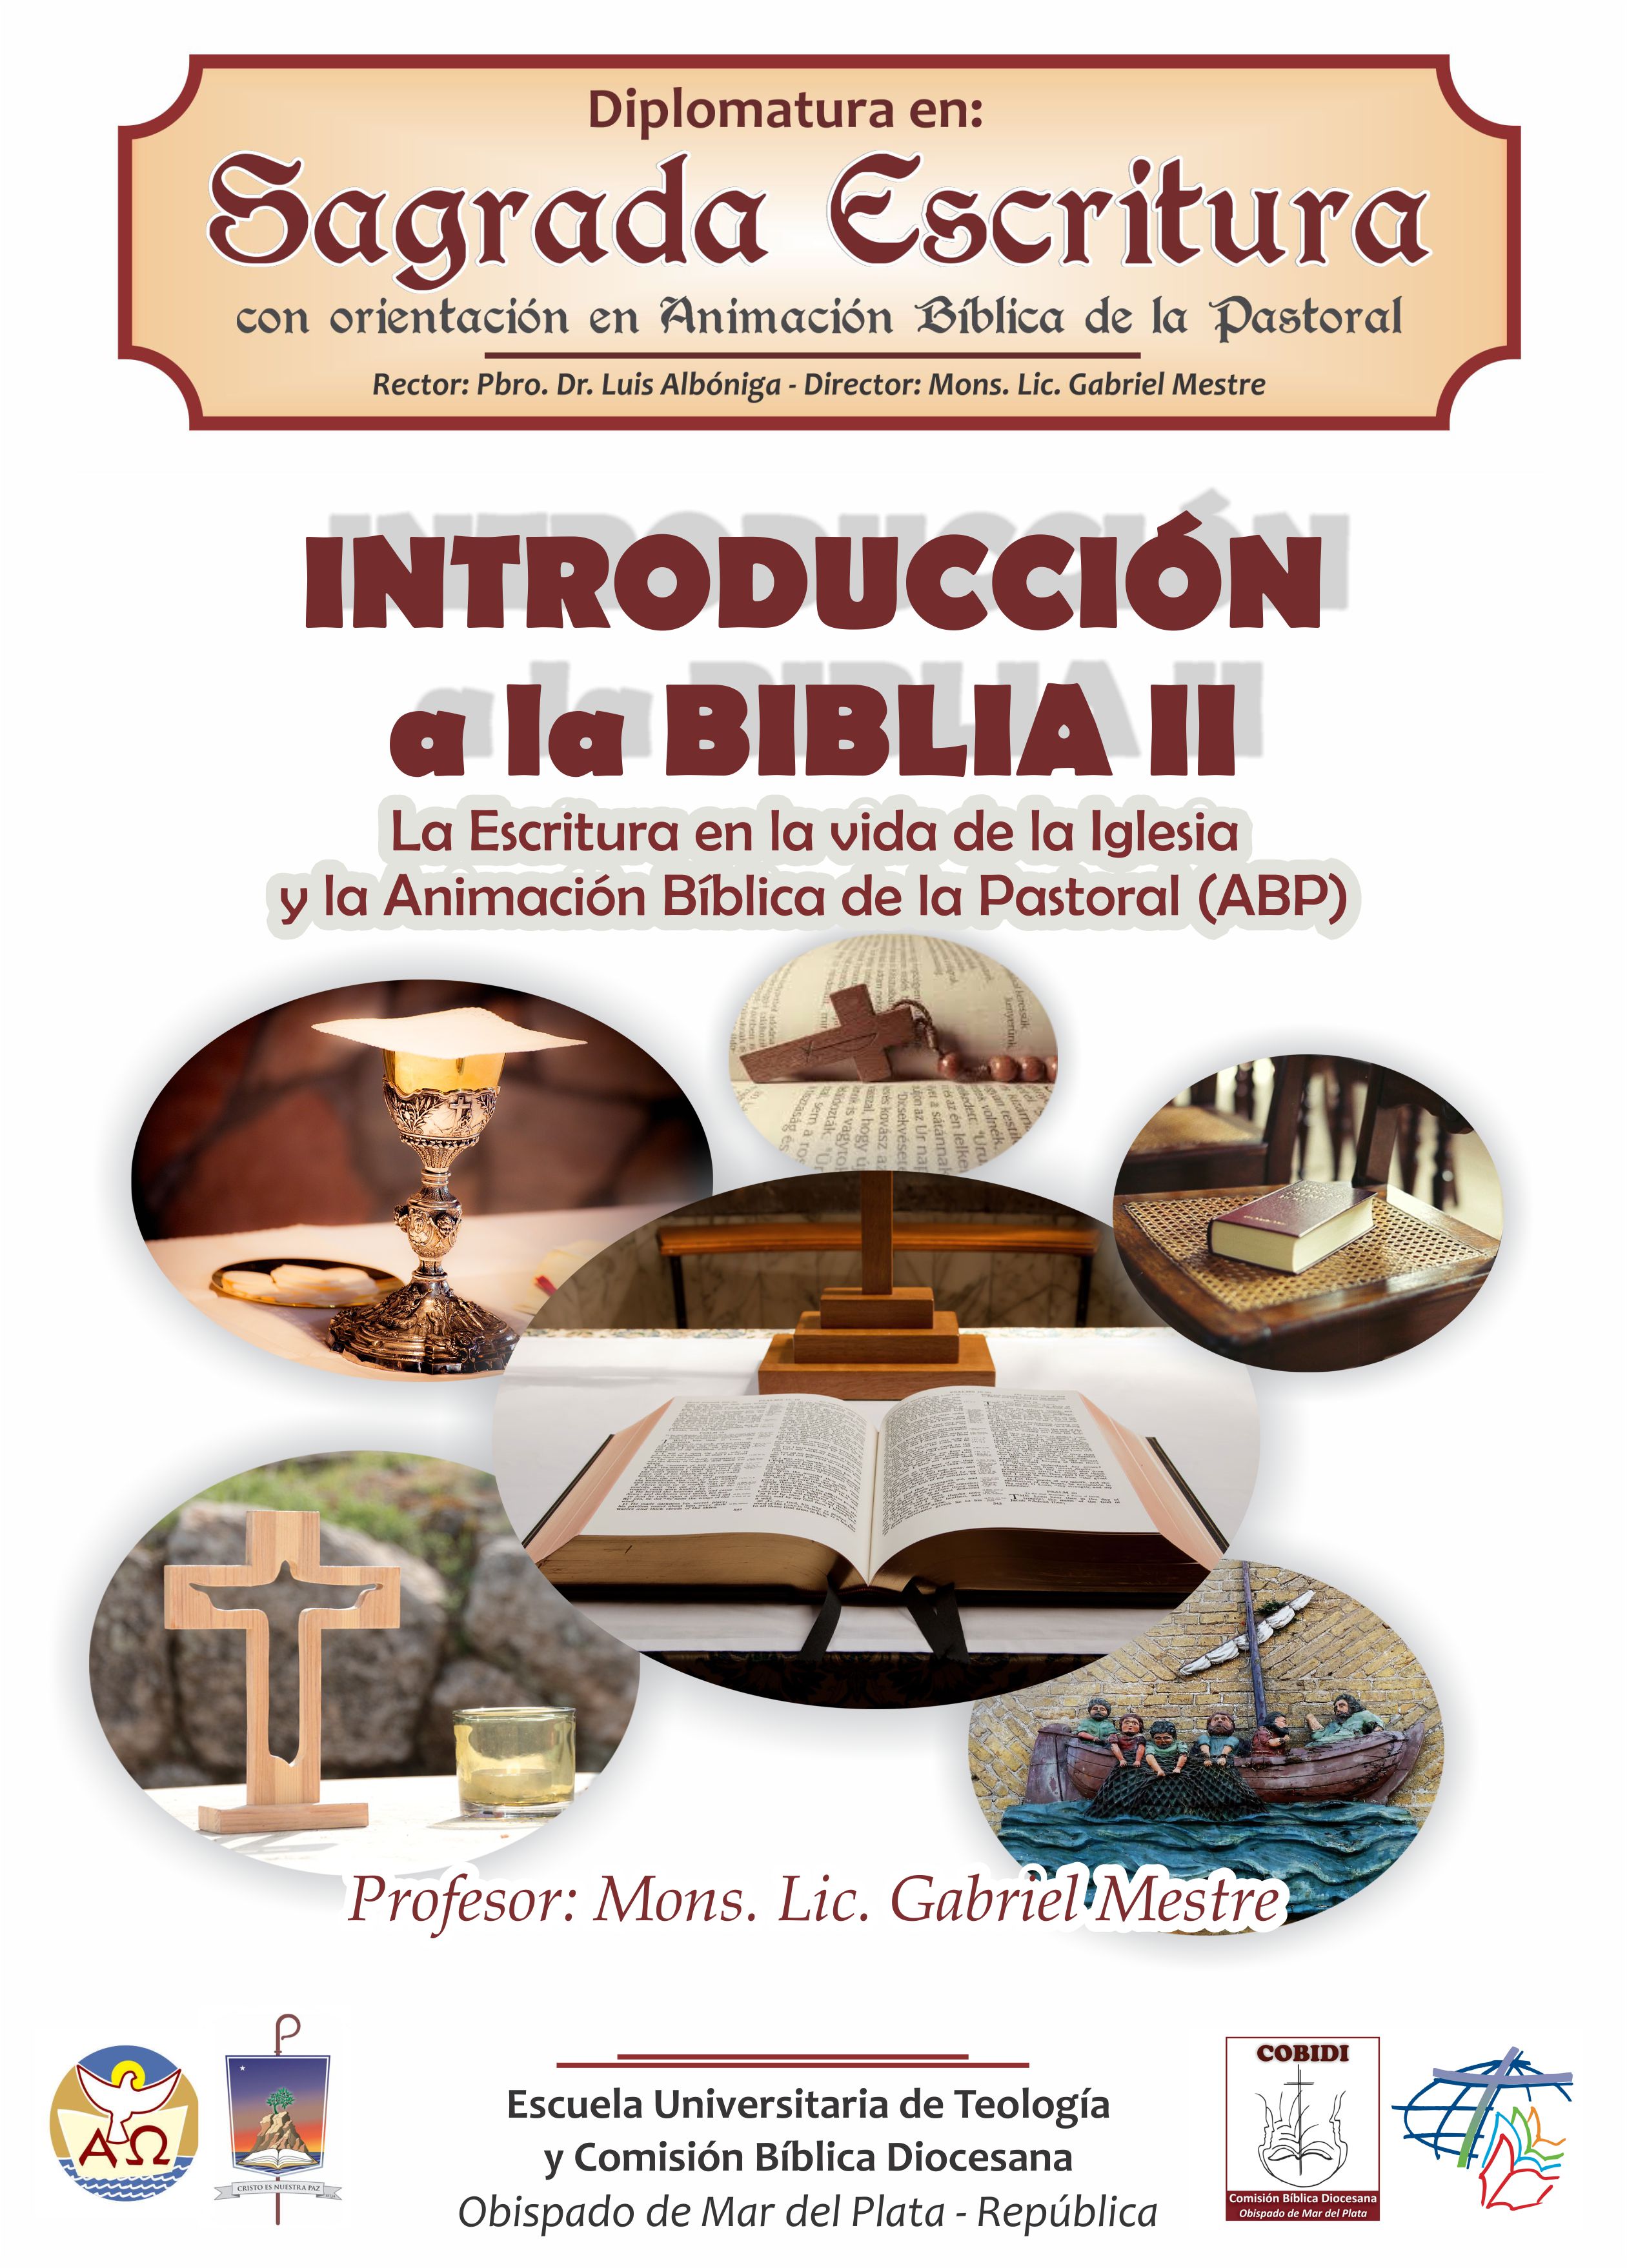 Introducción a la Biblia II: La Escritura en la vida de la Iglesia y la ABP 